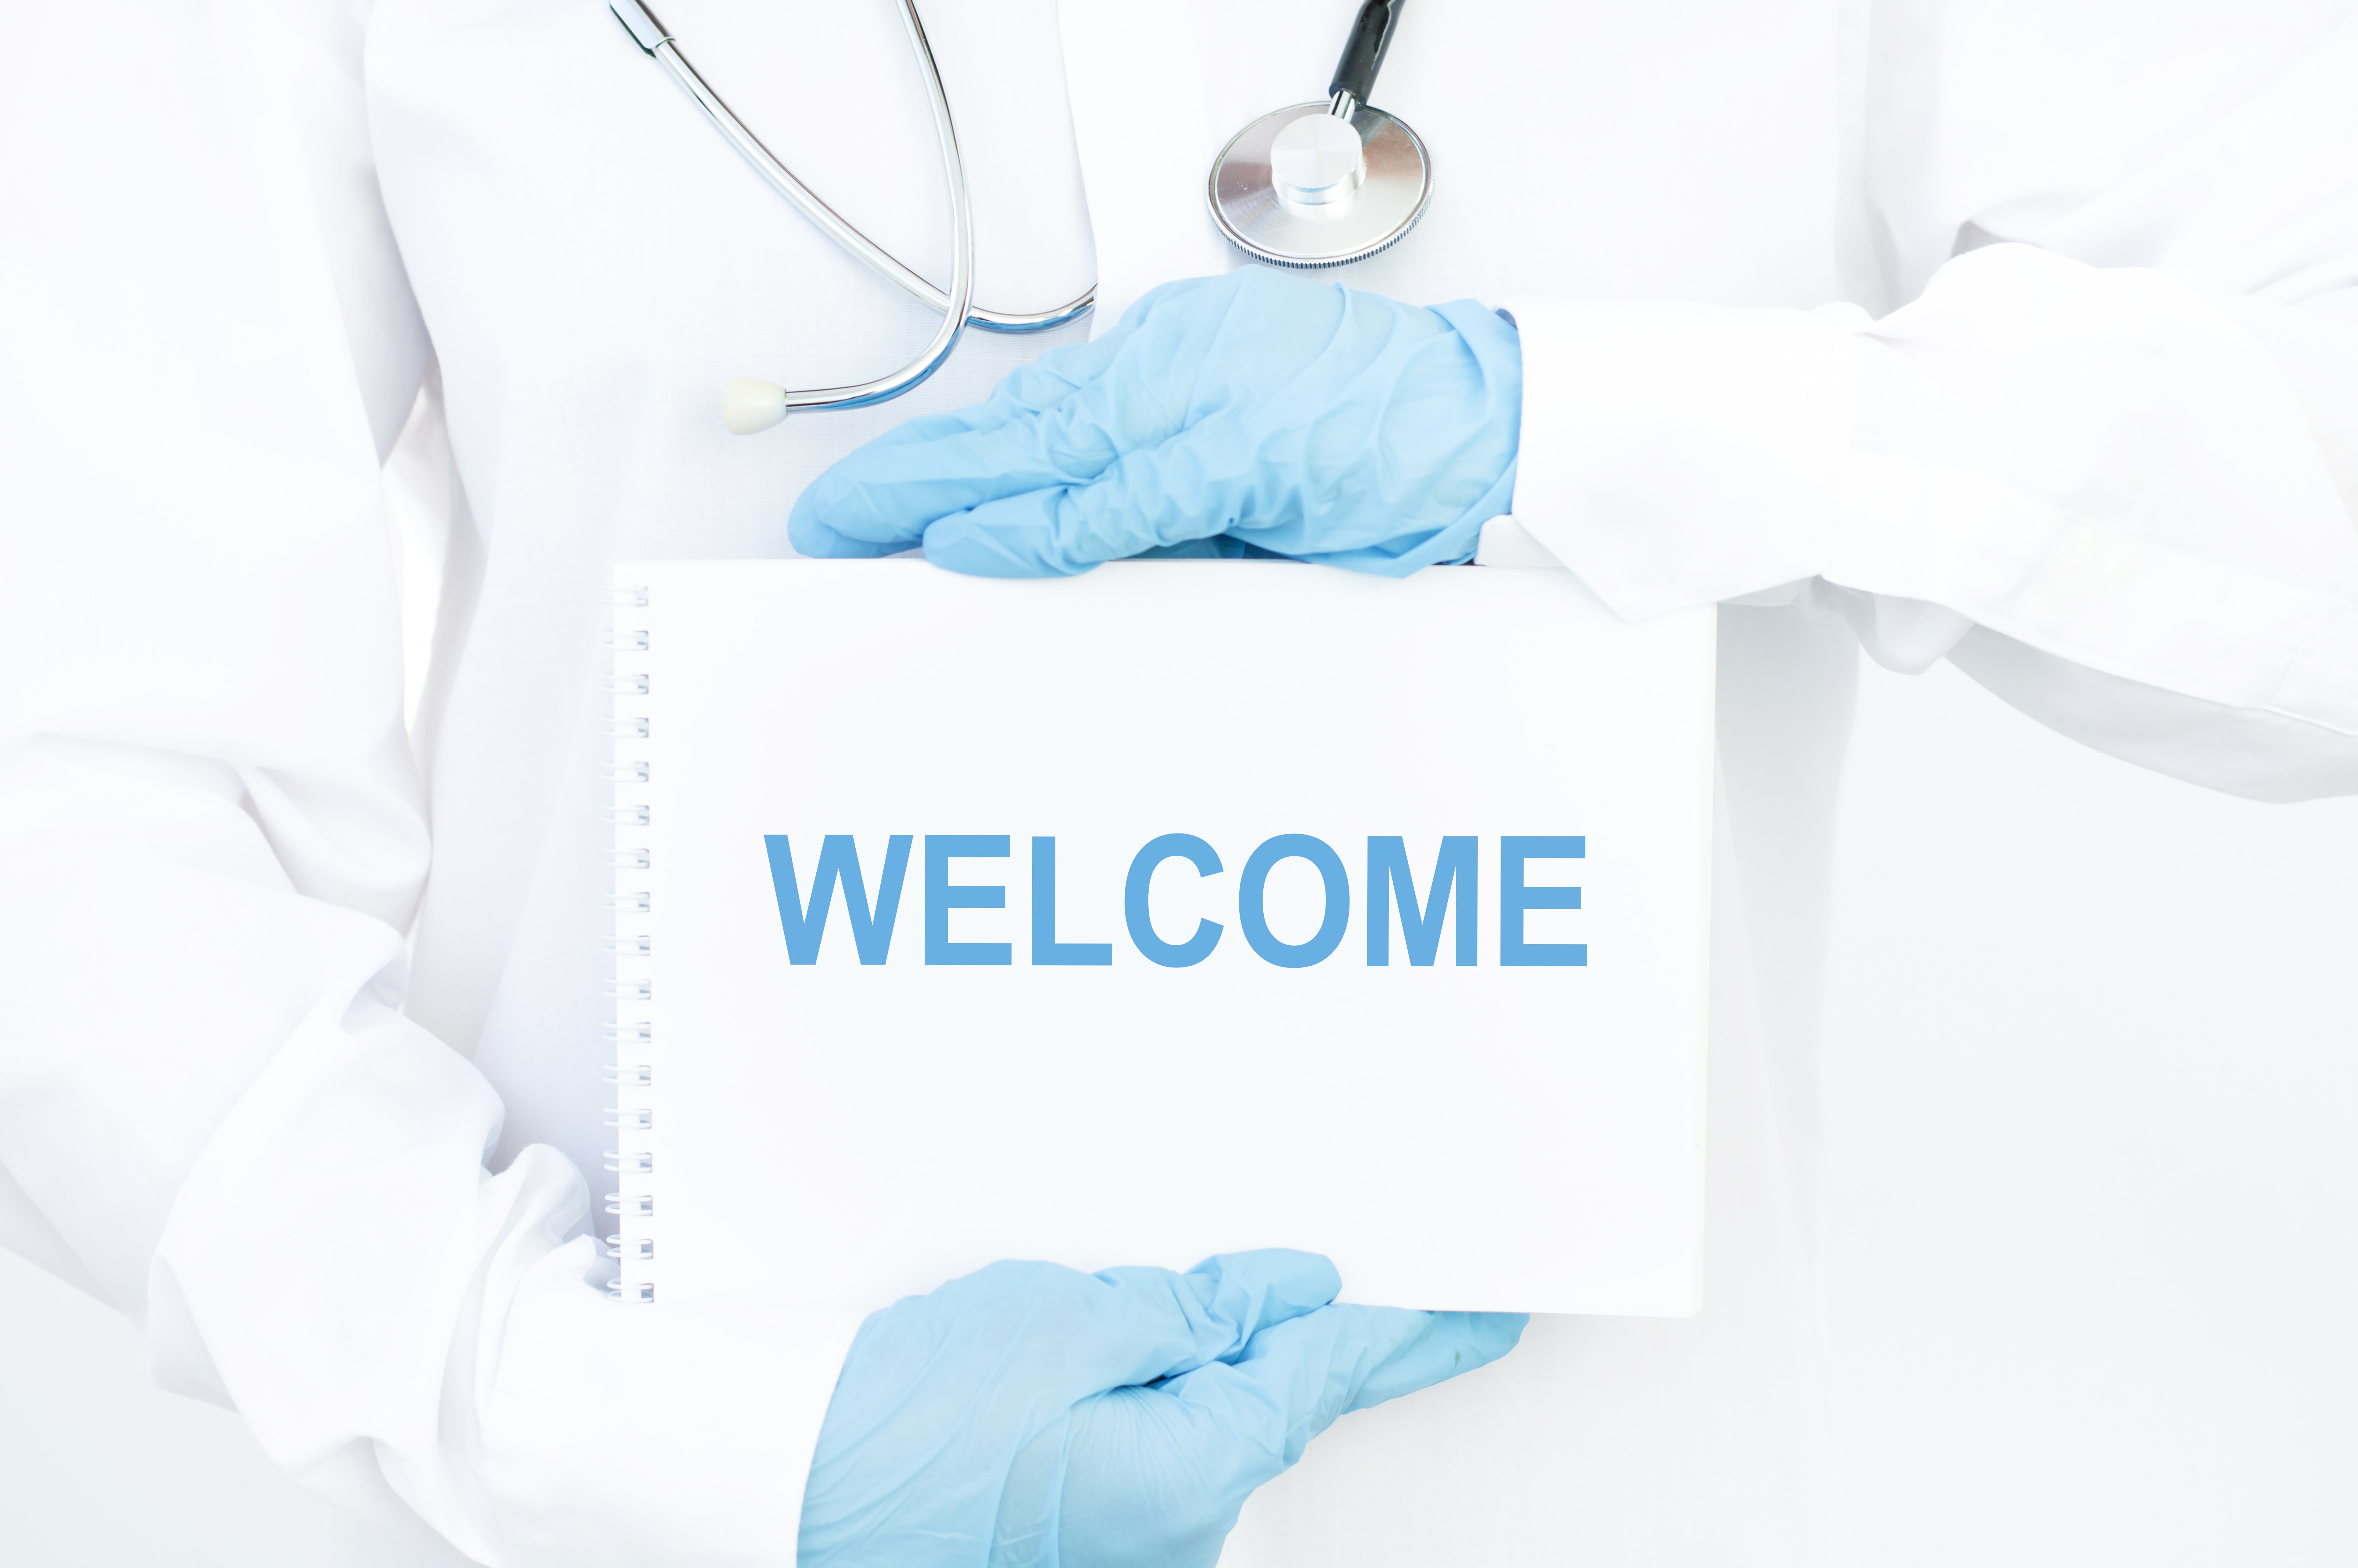 Arzt mit weißem Kittel und blauen Handschuhen hält ein "Welcome"-Schild. | Quelle: Shutterstock